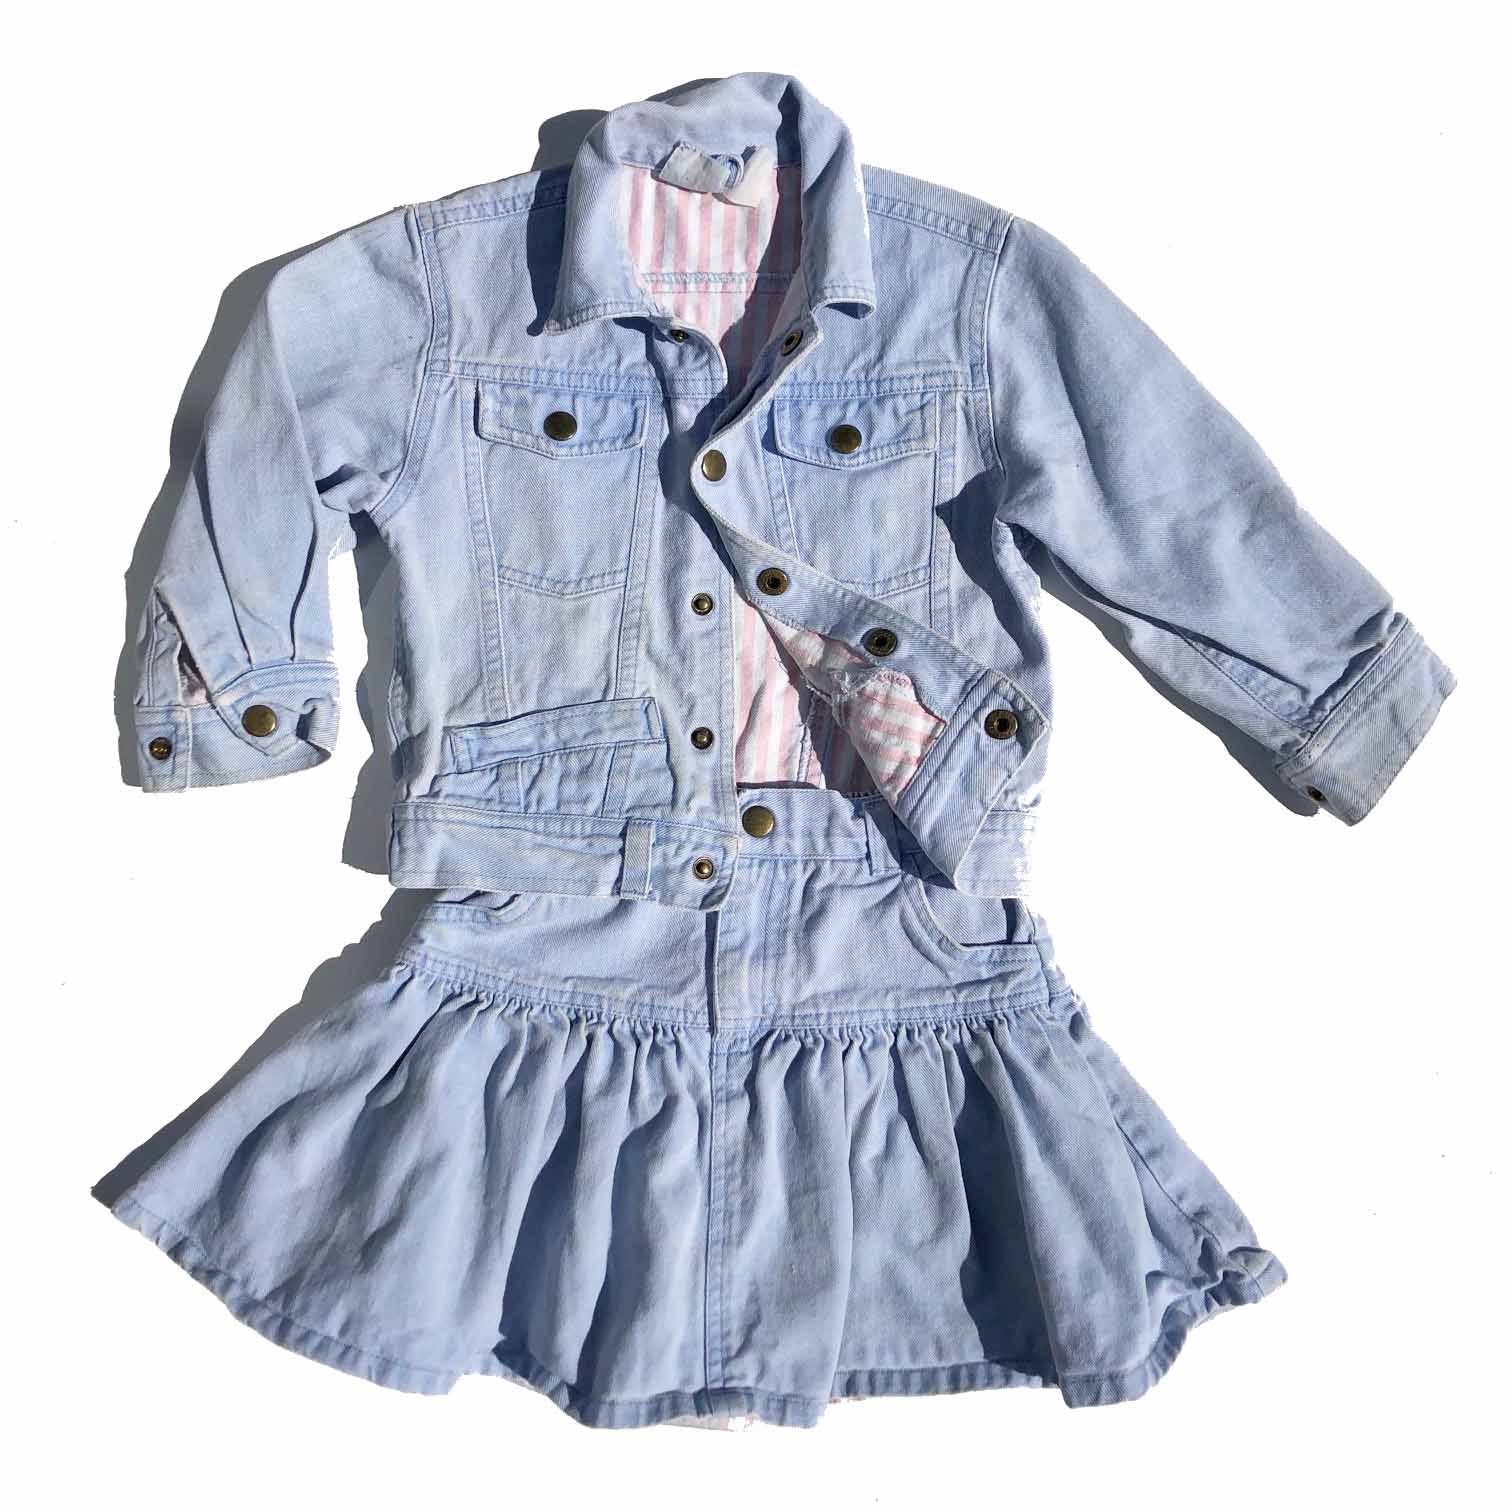 Vintage Denim Jacket and Skirt Set size 3-4